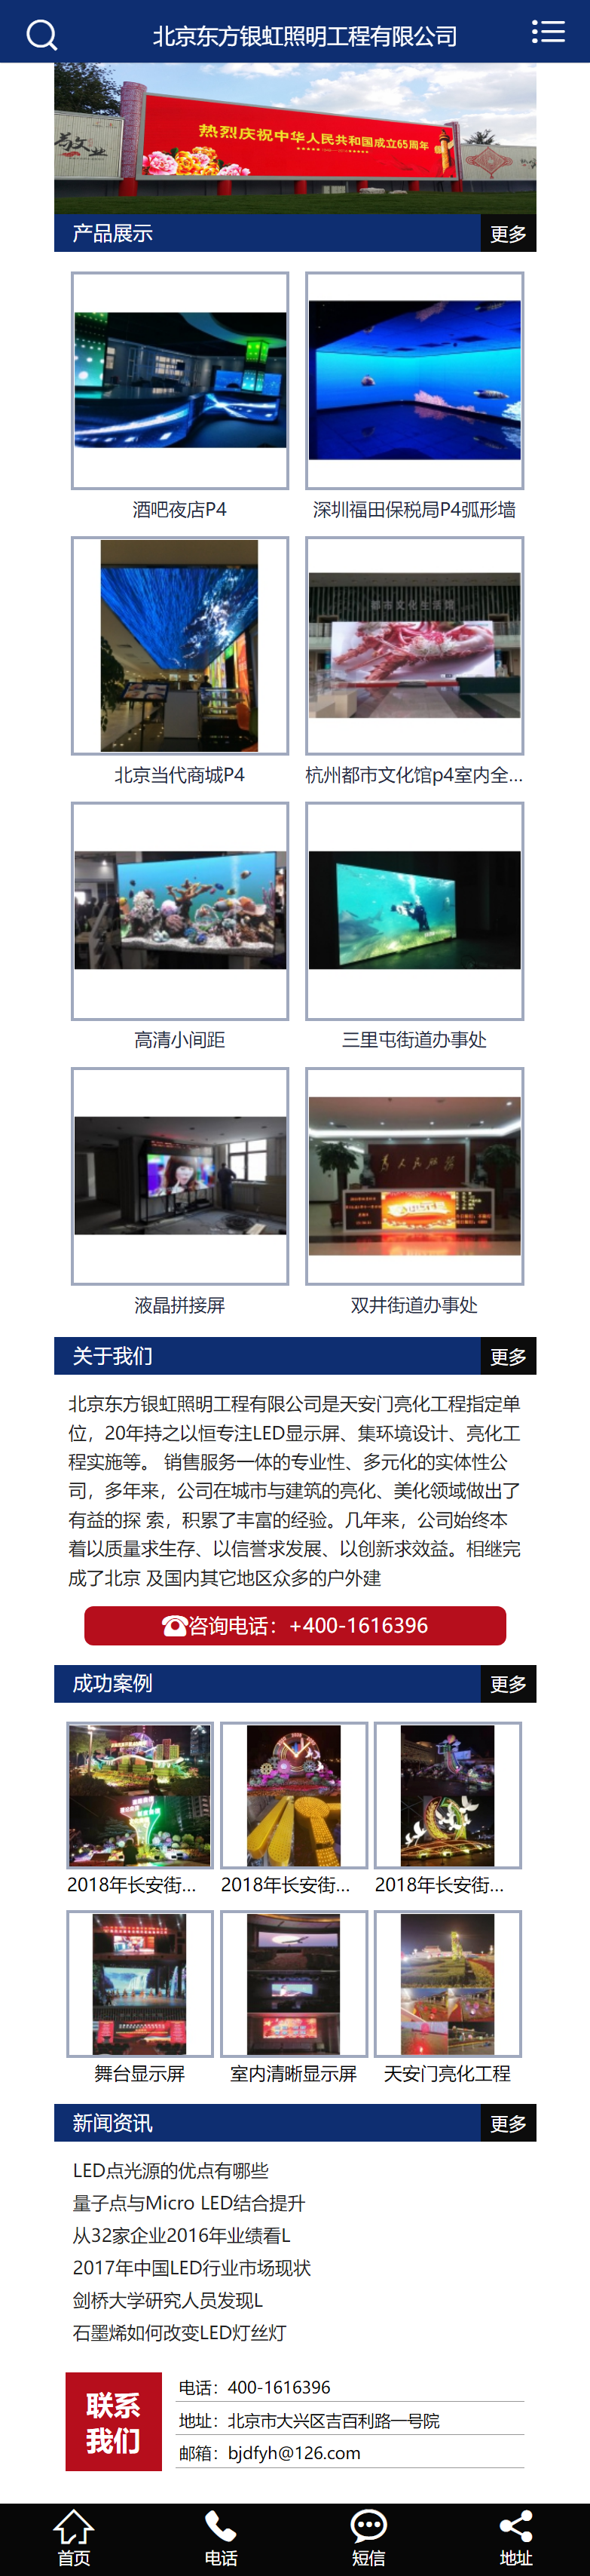 北京东方银虹照明工程有限公司网站案例